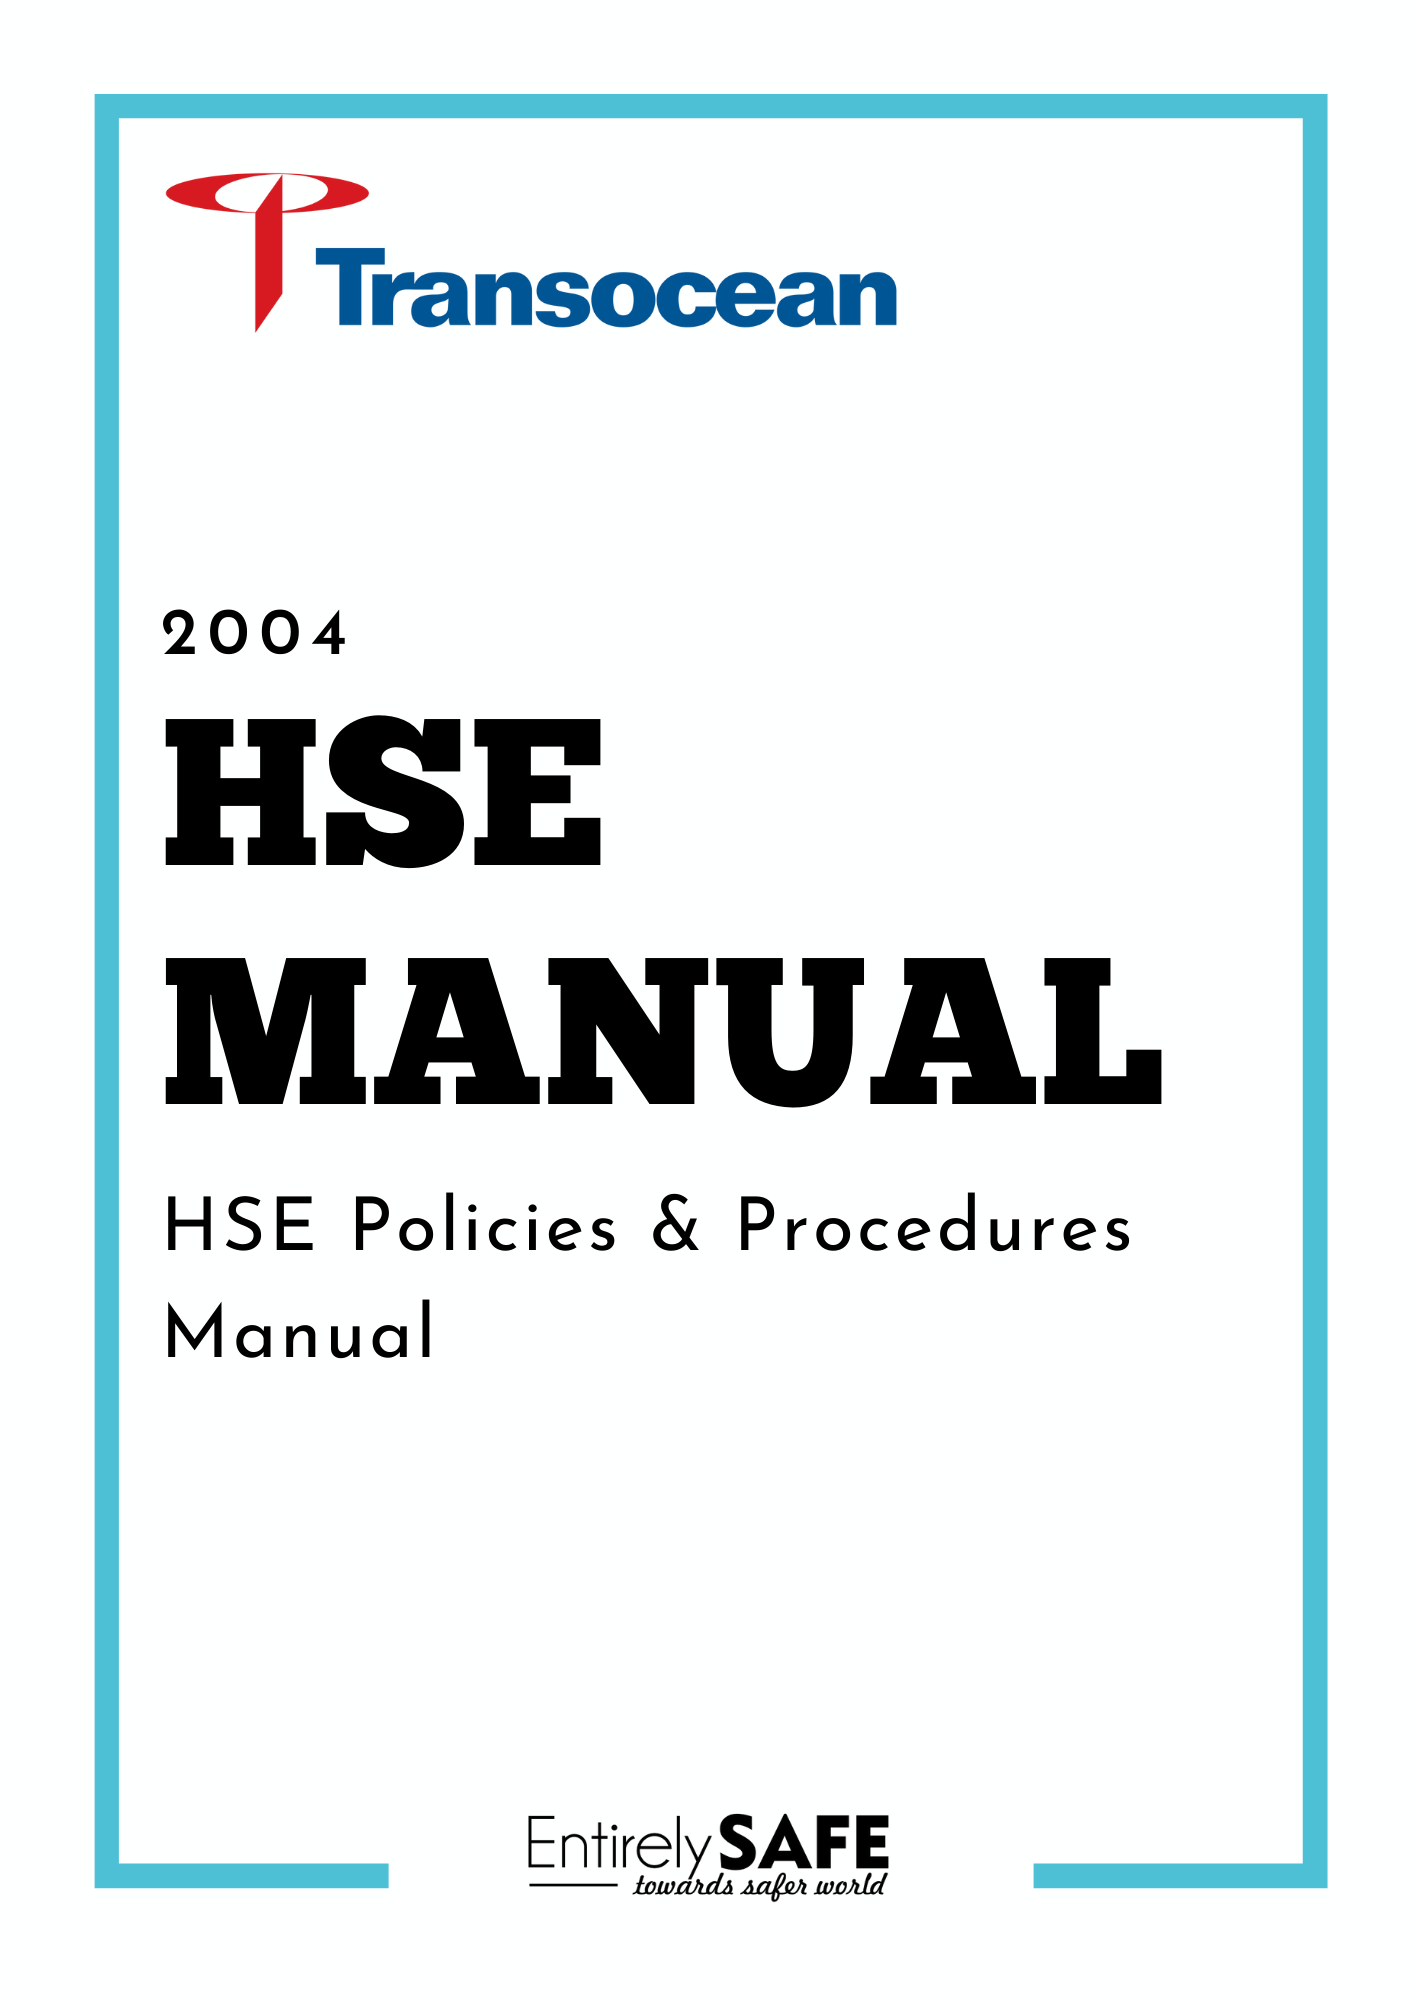 157-HSE-Manual-Transocean